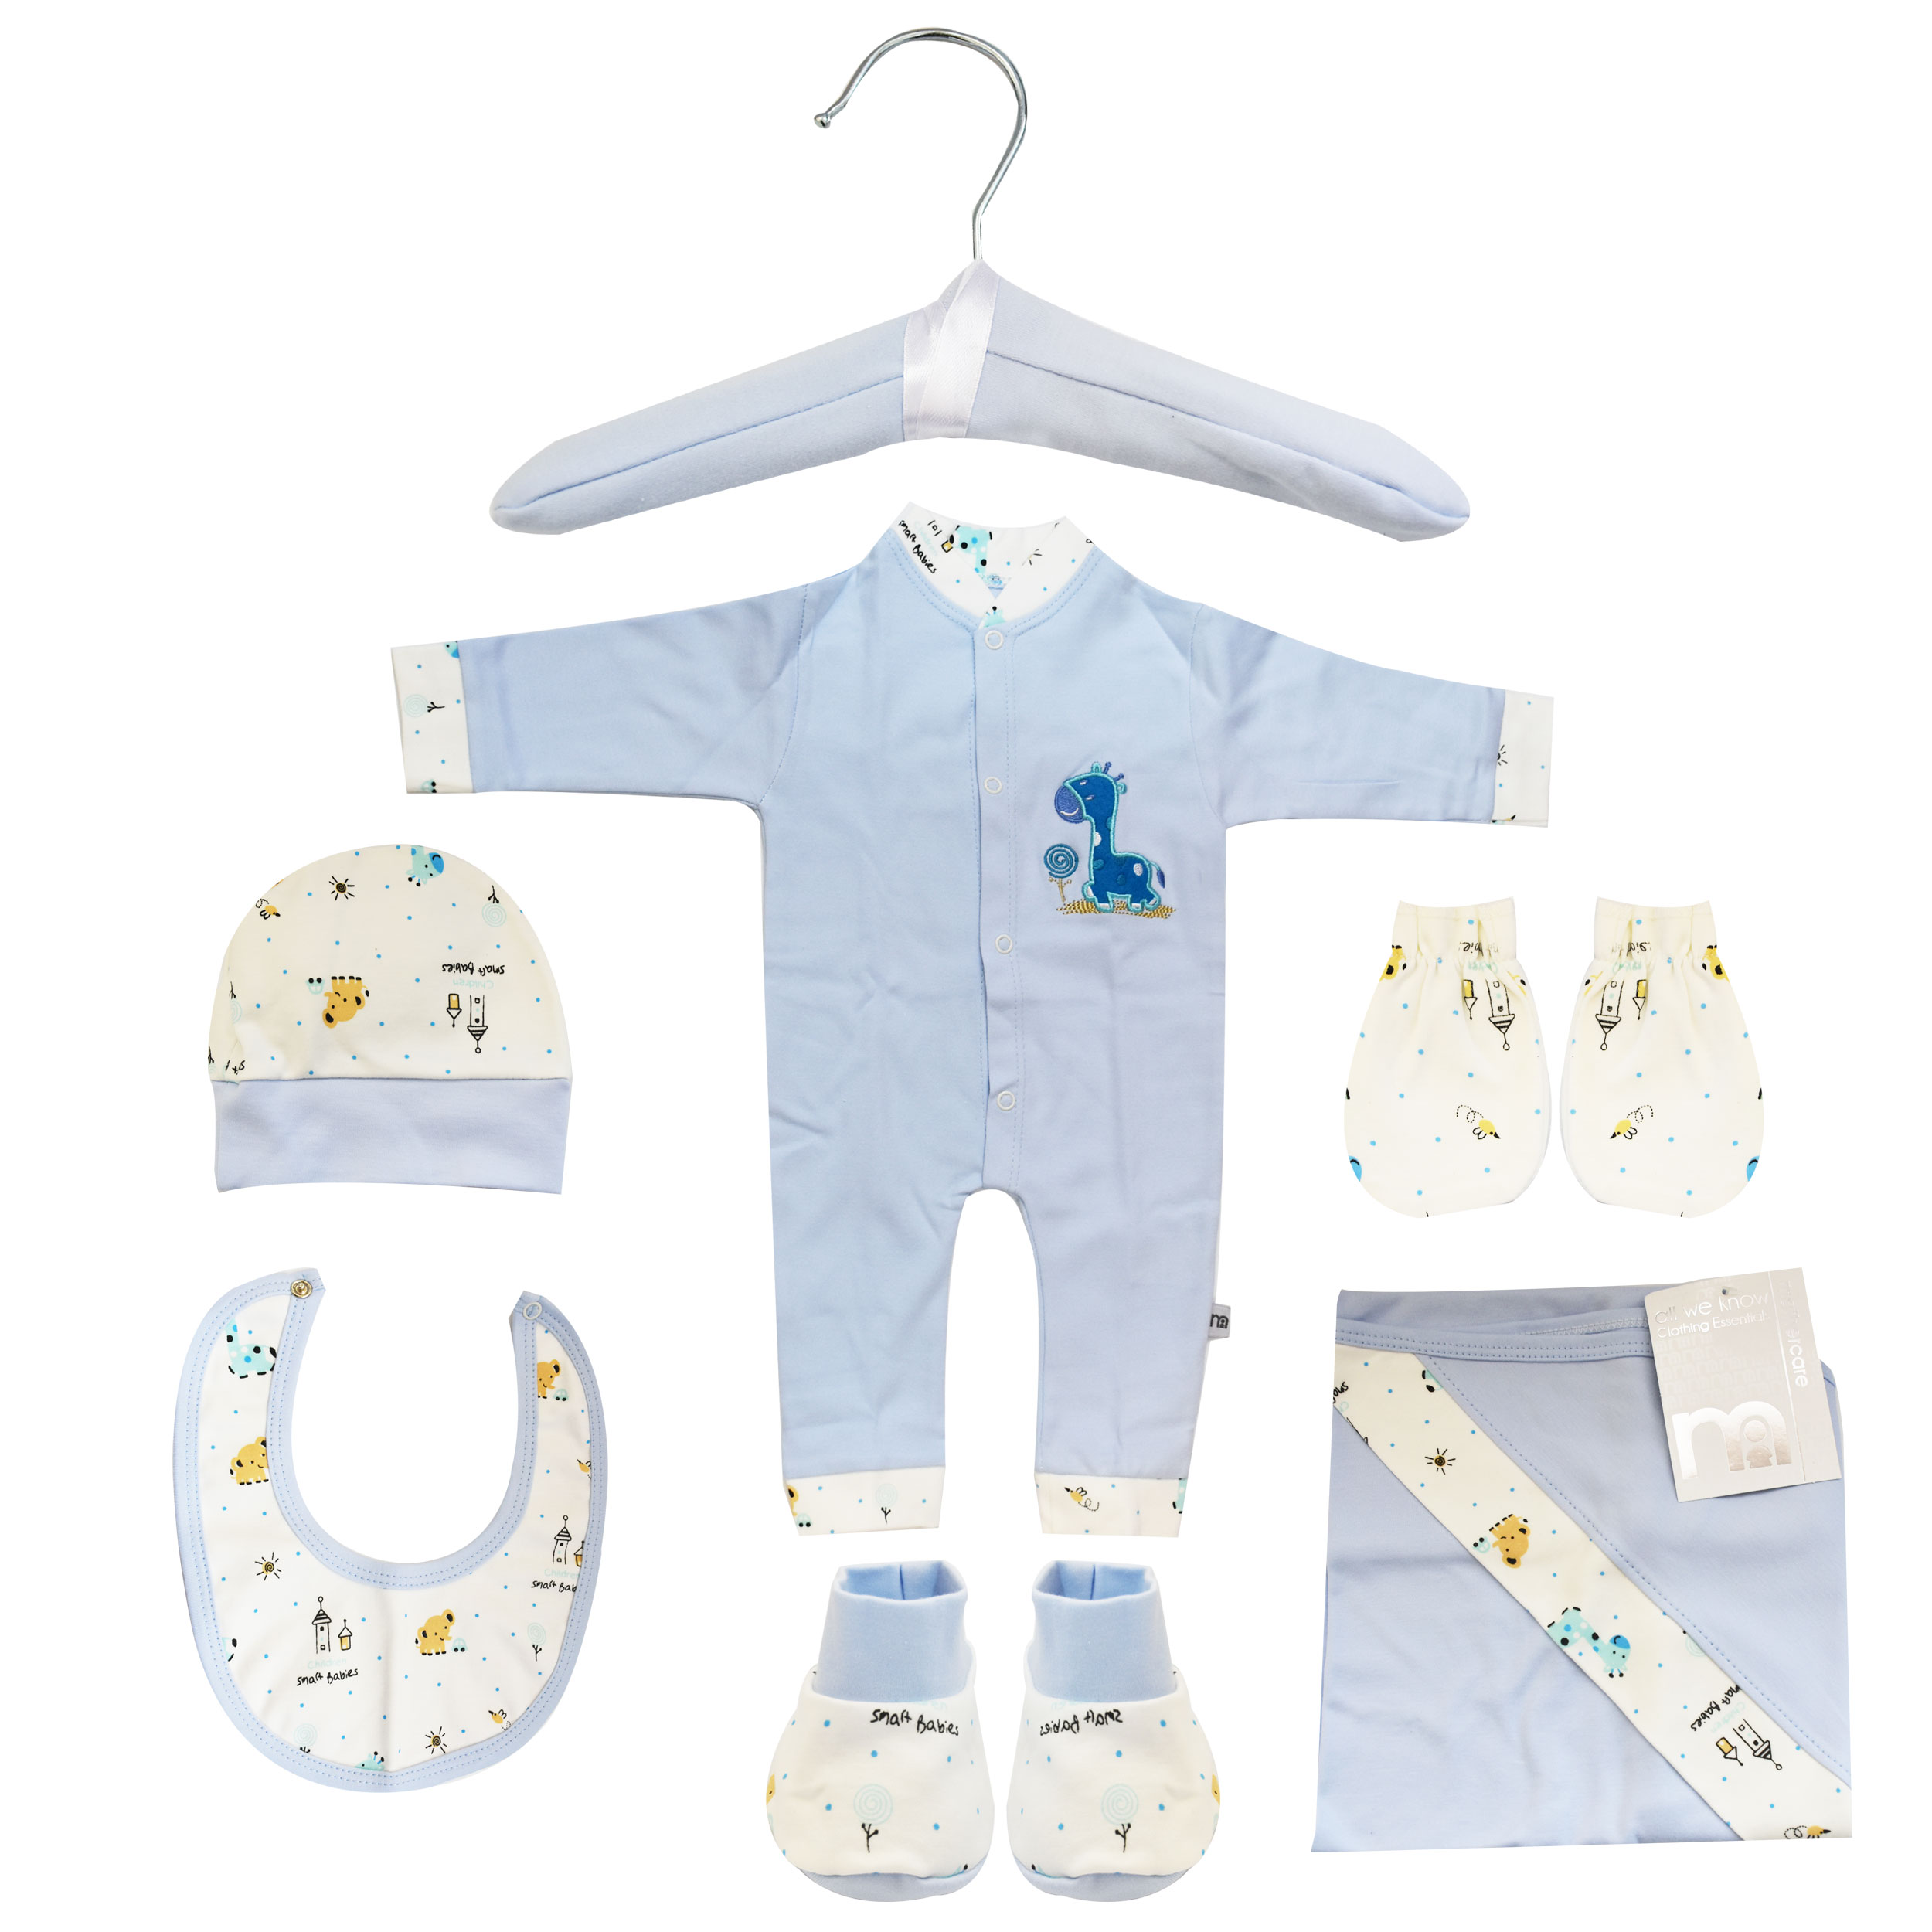 ست 7 تکه لباس نوزادی مادرکر طرح زرافه کد M454.6 -  - 9